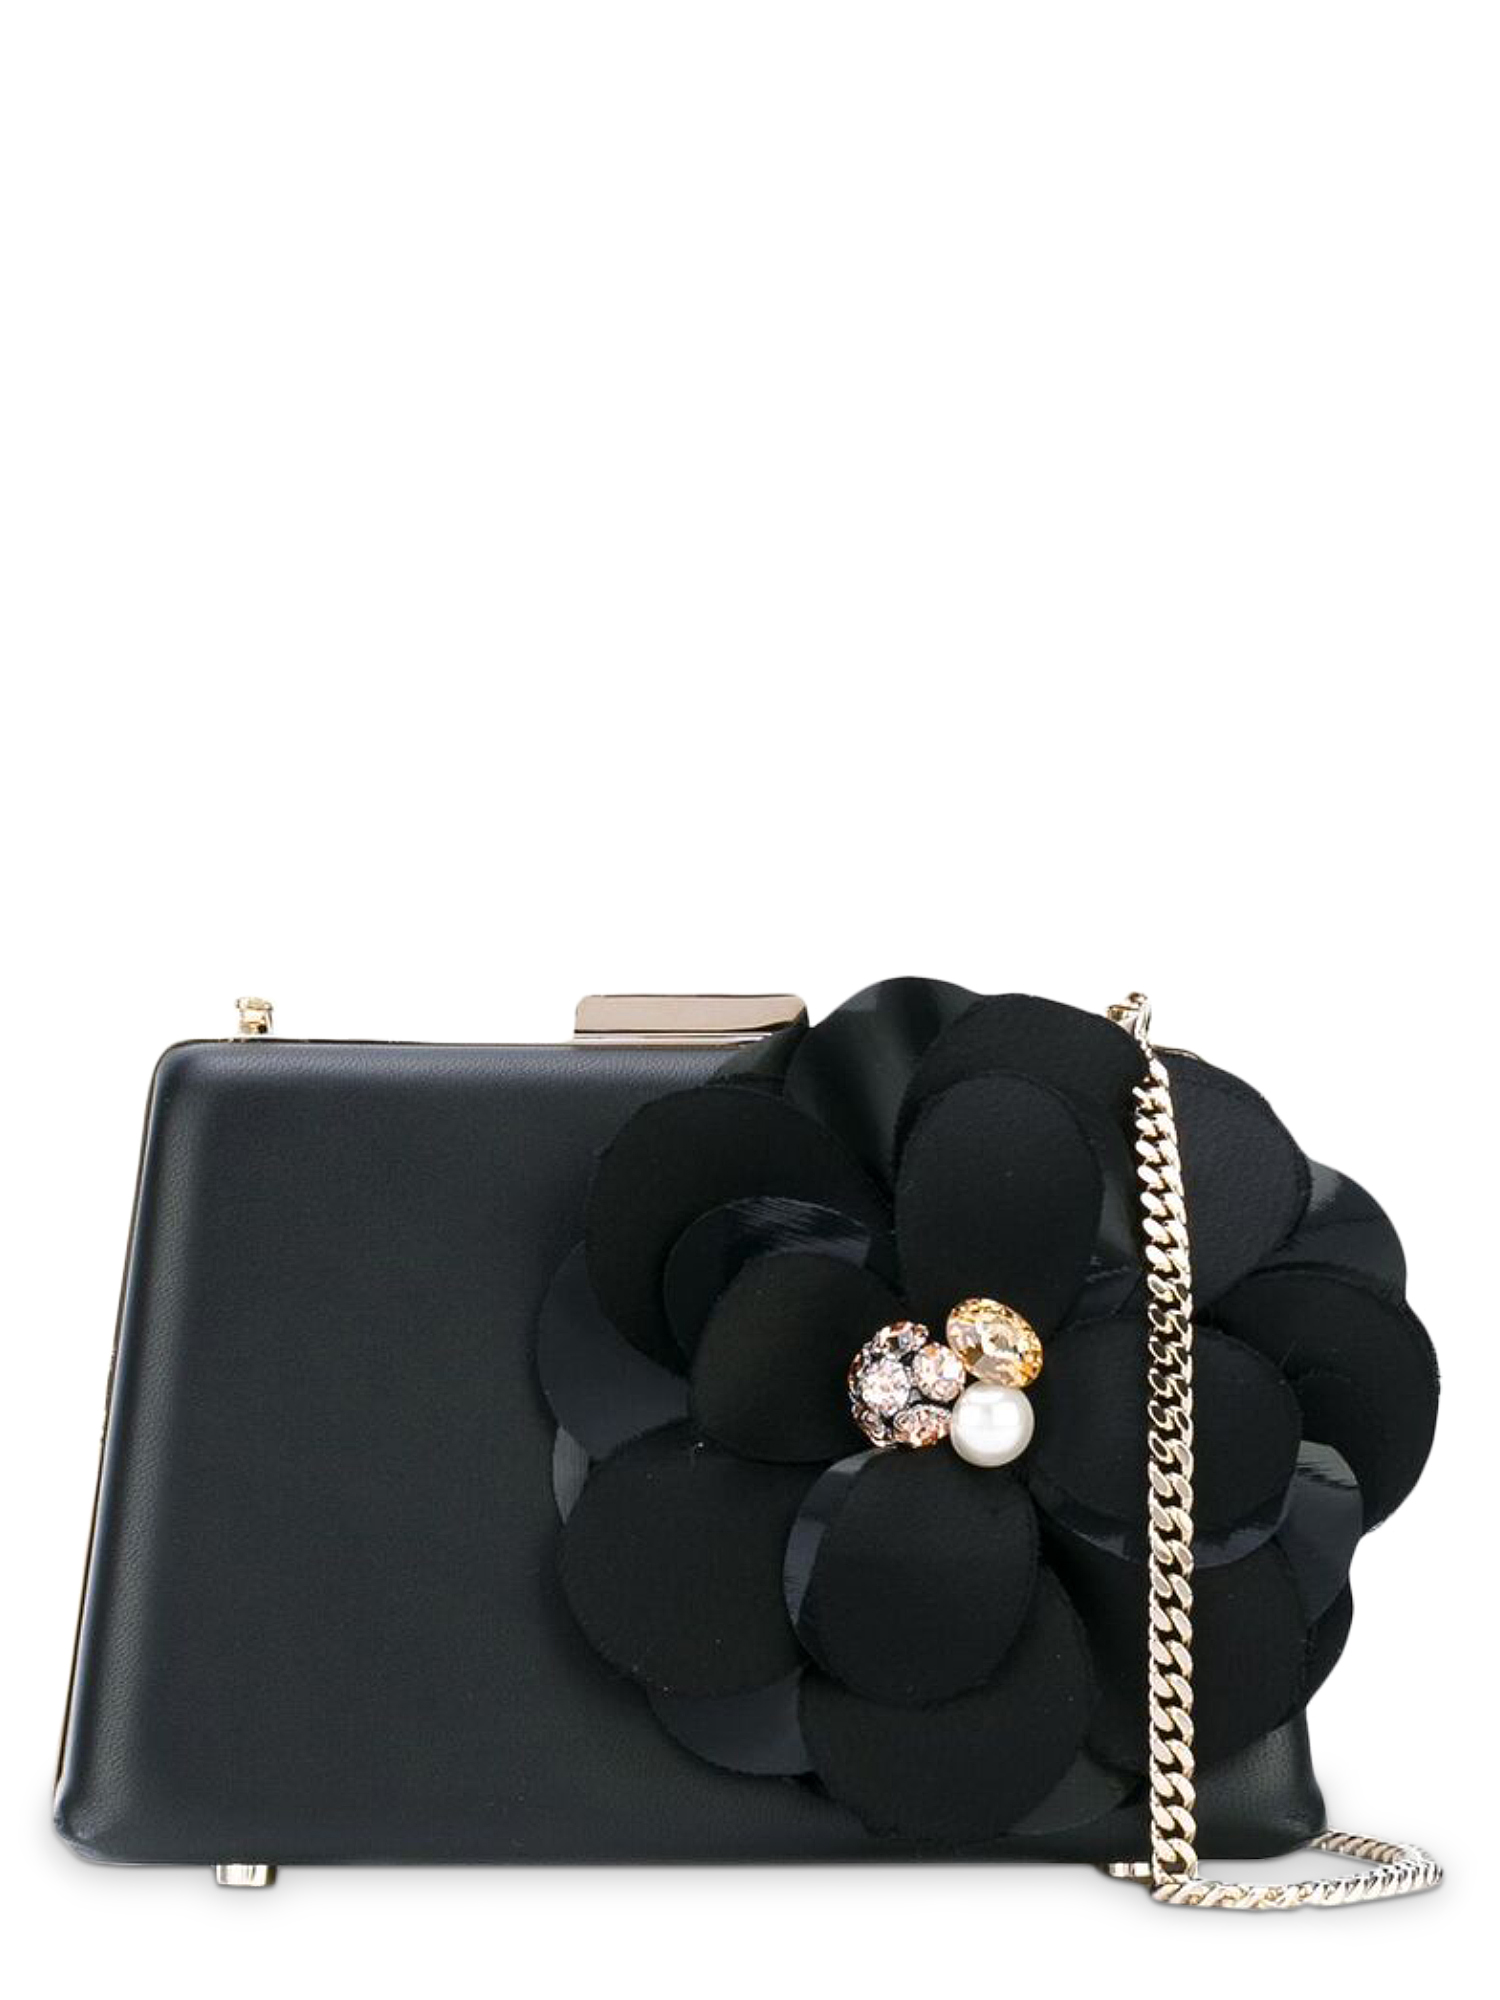 Lanvin Women's Handbags -  - In Black Leather